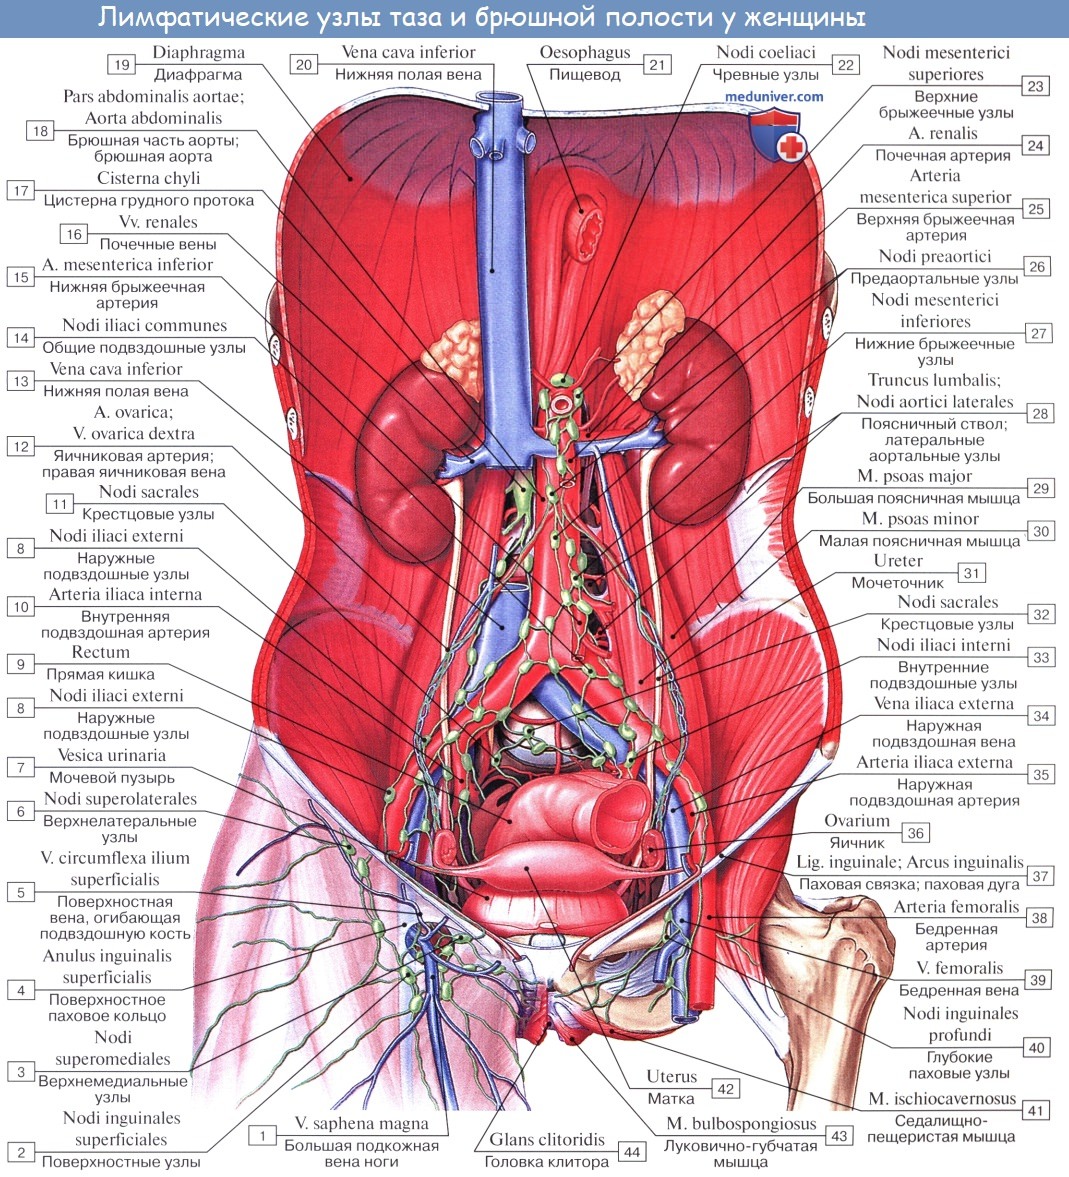 Анатомия: Сосуды и нервы яичника. Кровоснабжение, лимфатический отток от яичника. Иннервация яичника